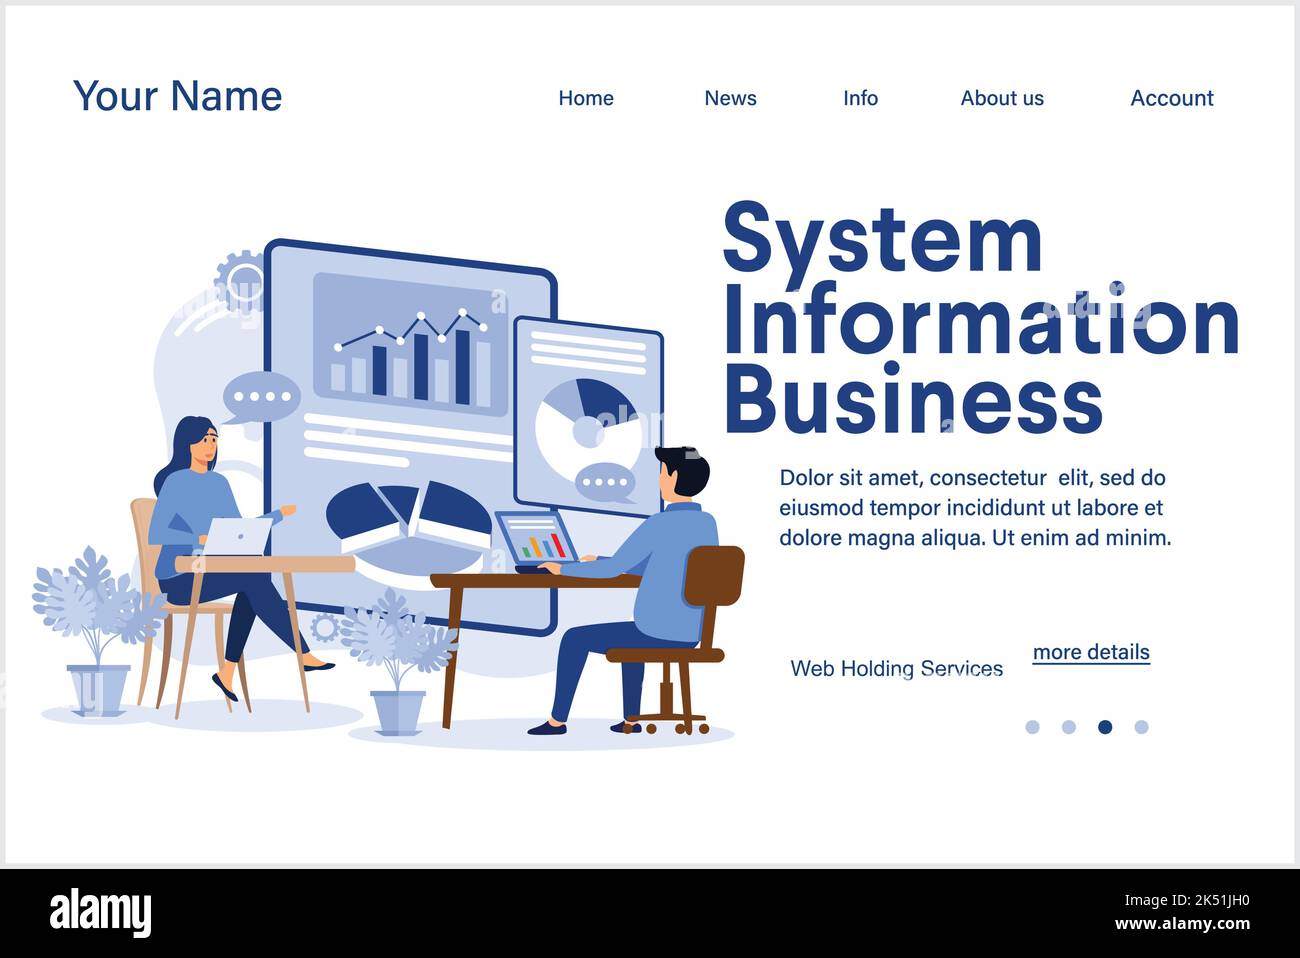 Business Information System abstrakte Konzept Vektor Illustration. IT-Infrastruktur, Unternehmen, Transaktionsverarbeitung und Automatisierung, ECOMM Stock Vektor